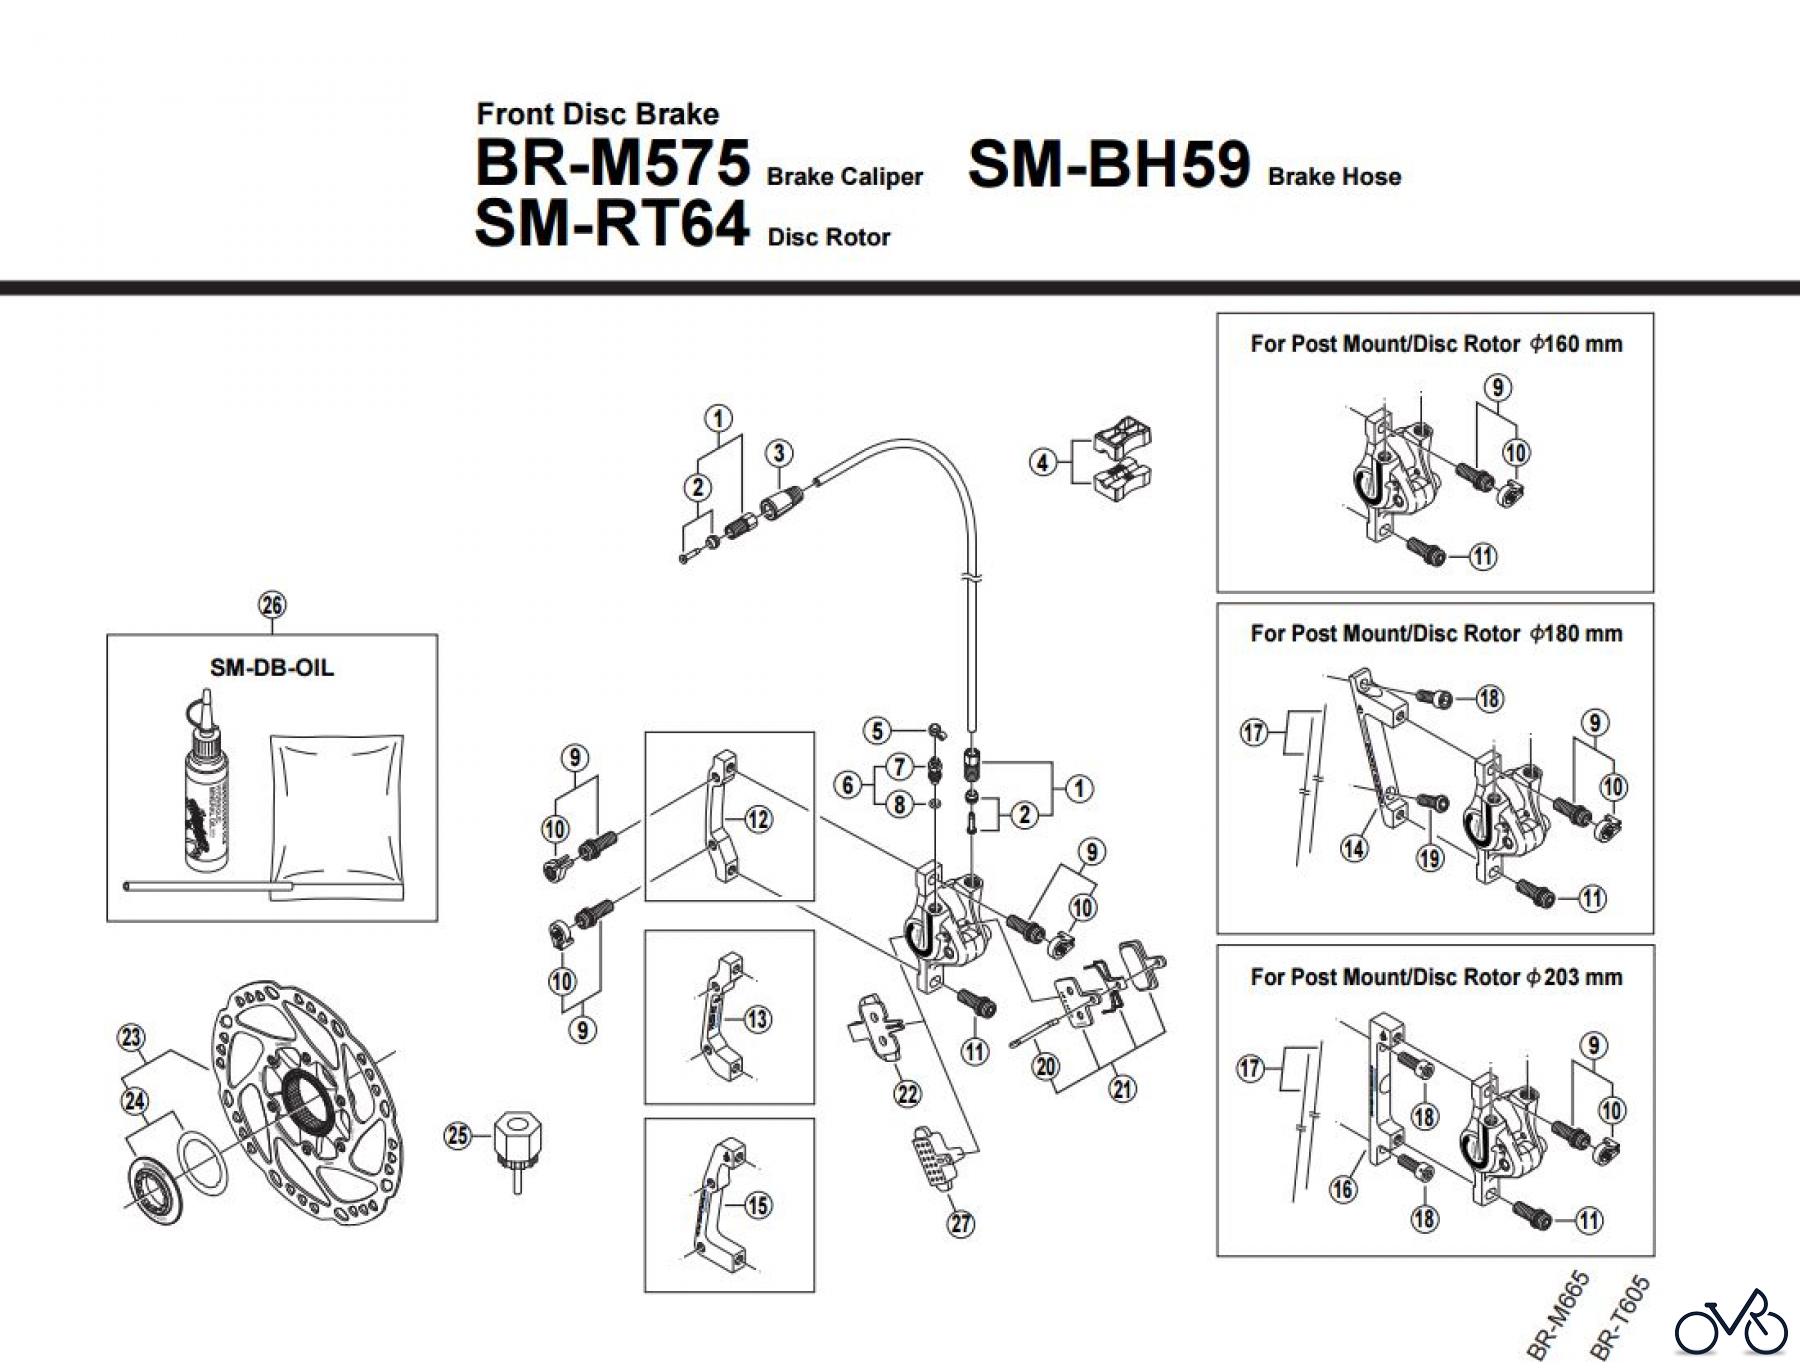  Shimano BR Brake - Bremse BR-M575-F, 2867B Front Disc Brake 